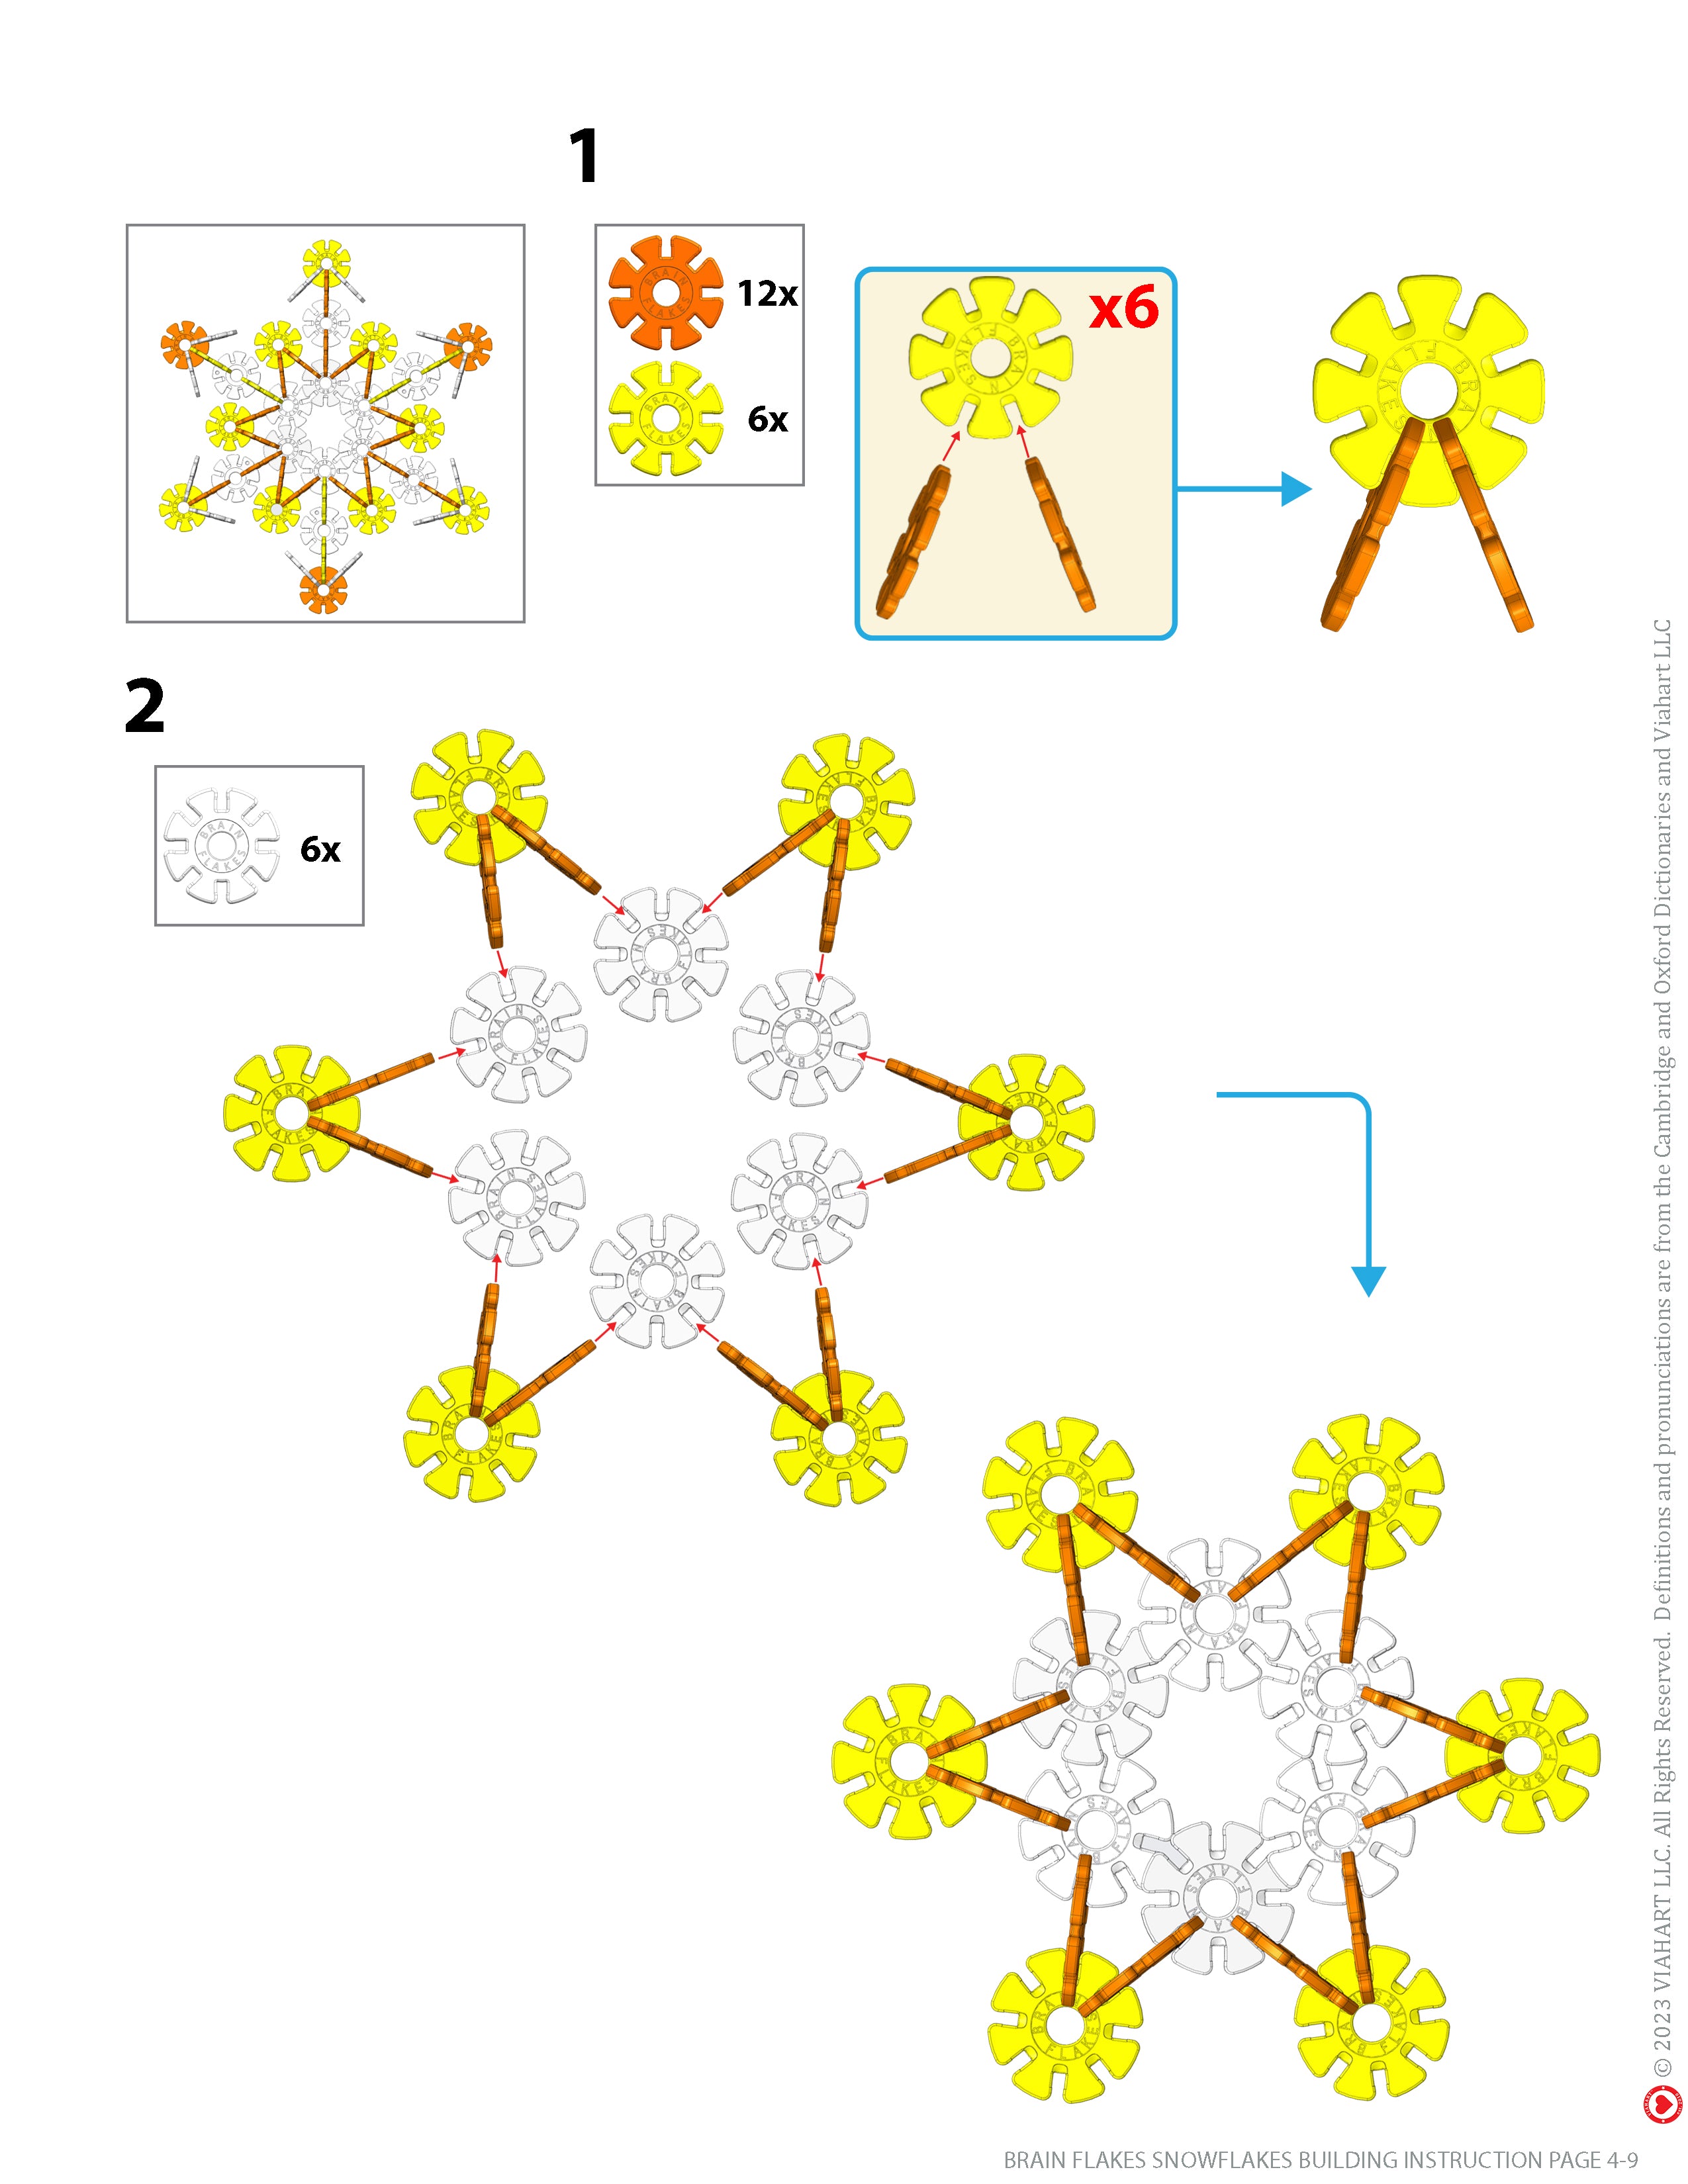 STEM Bins® Plastic Snowflakes / Brainflakes Speed Builds: STEM